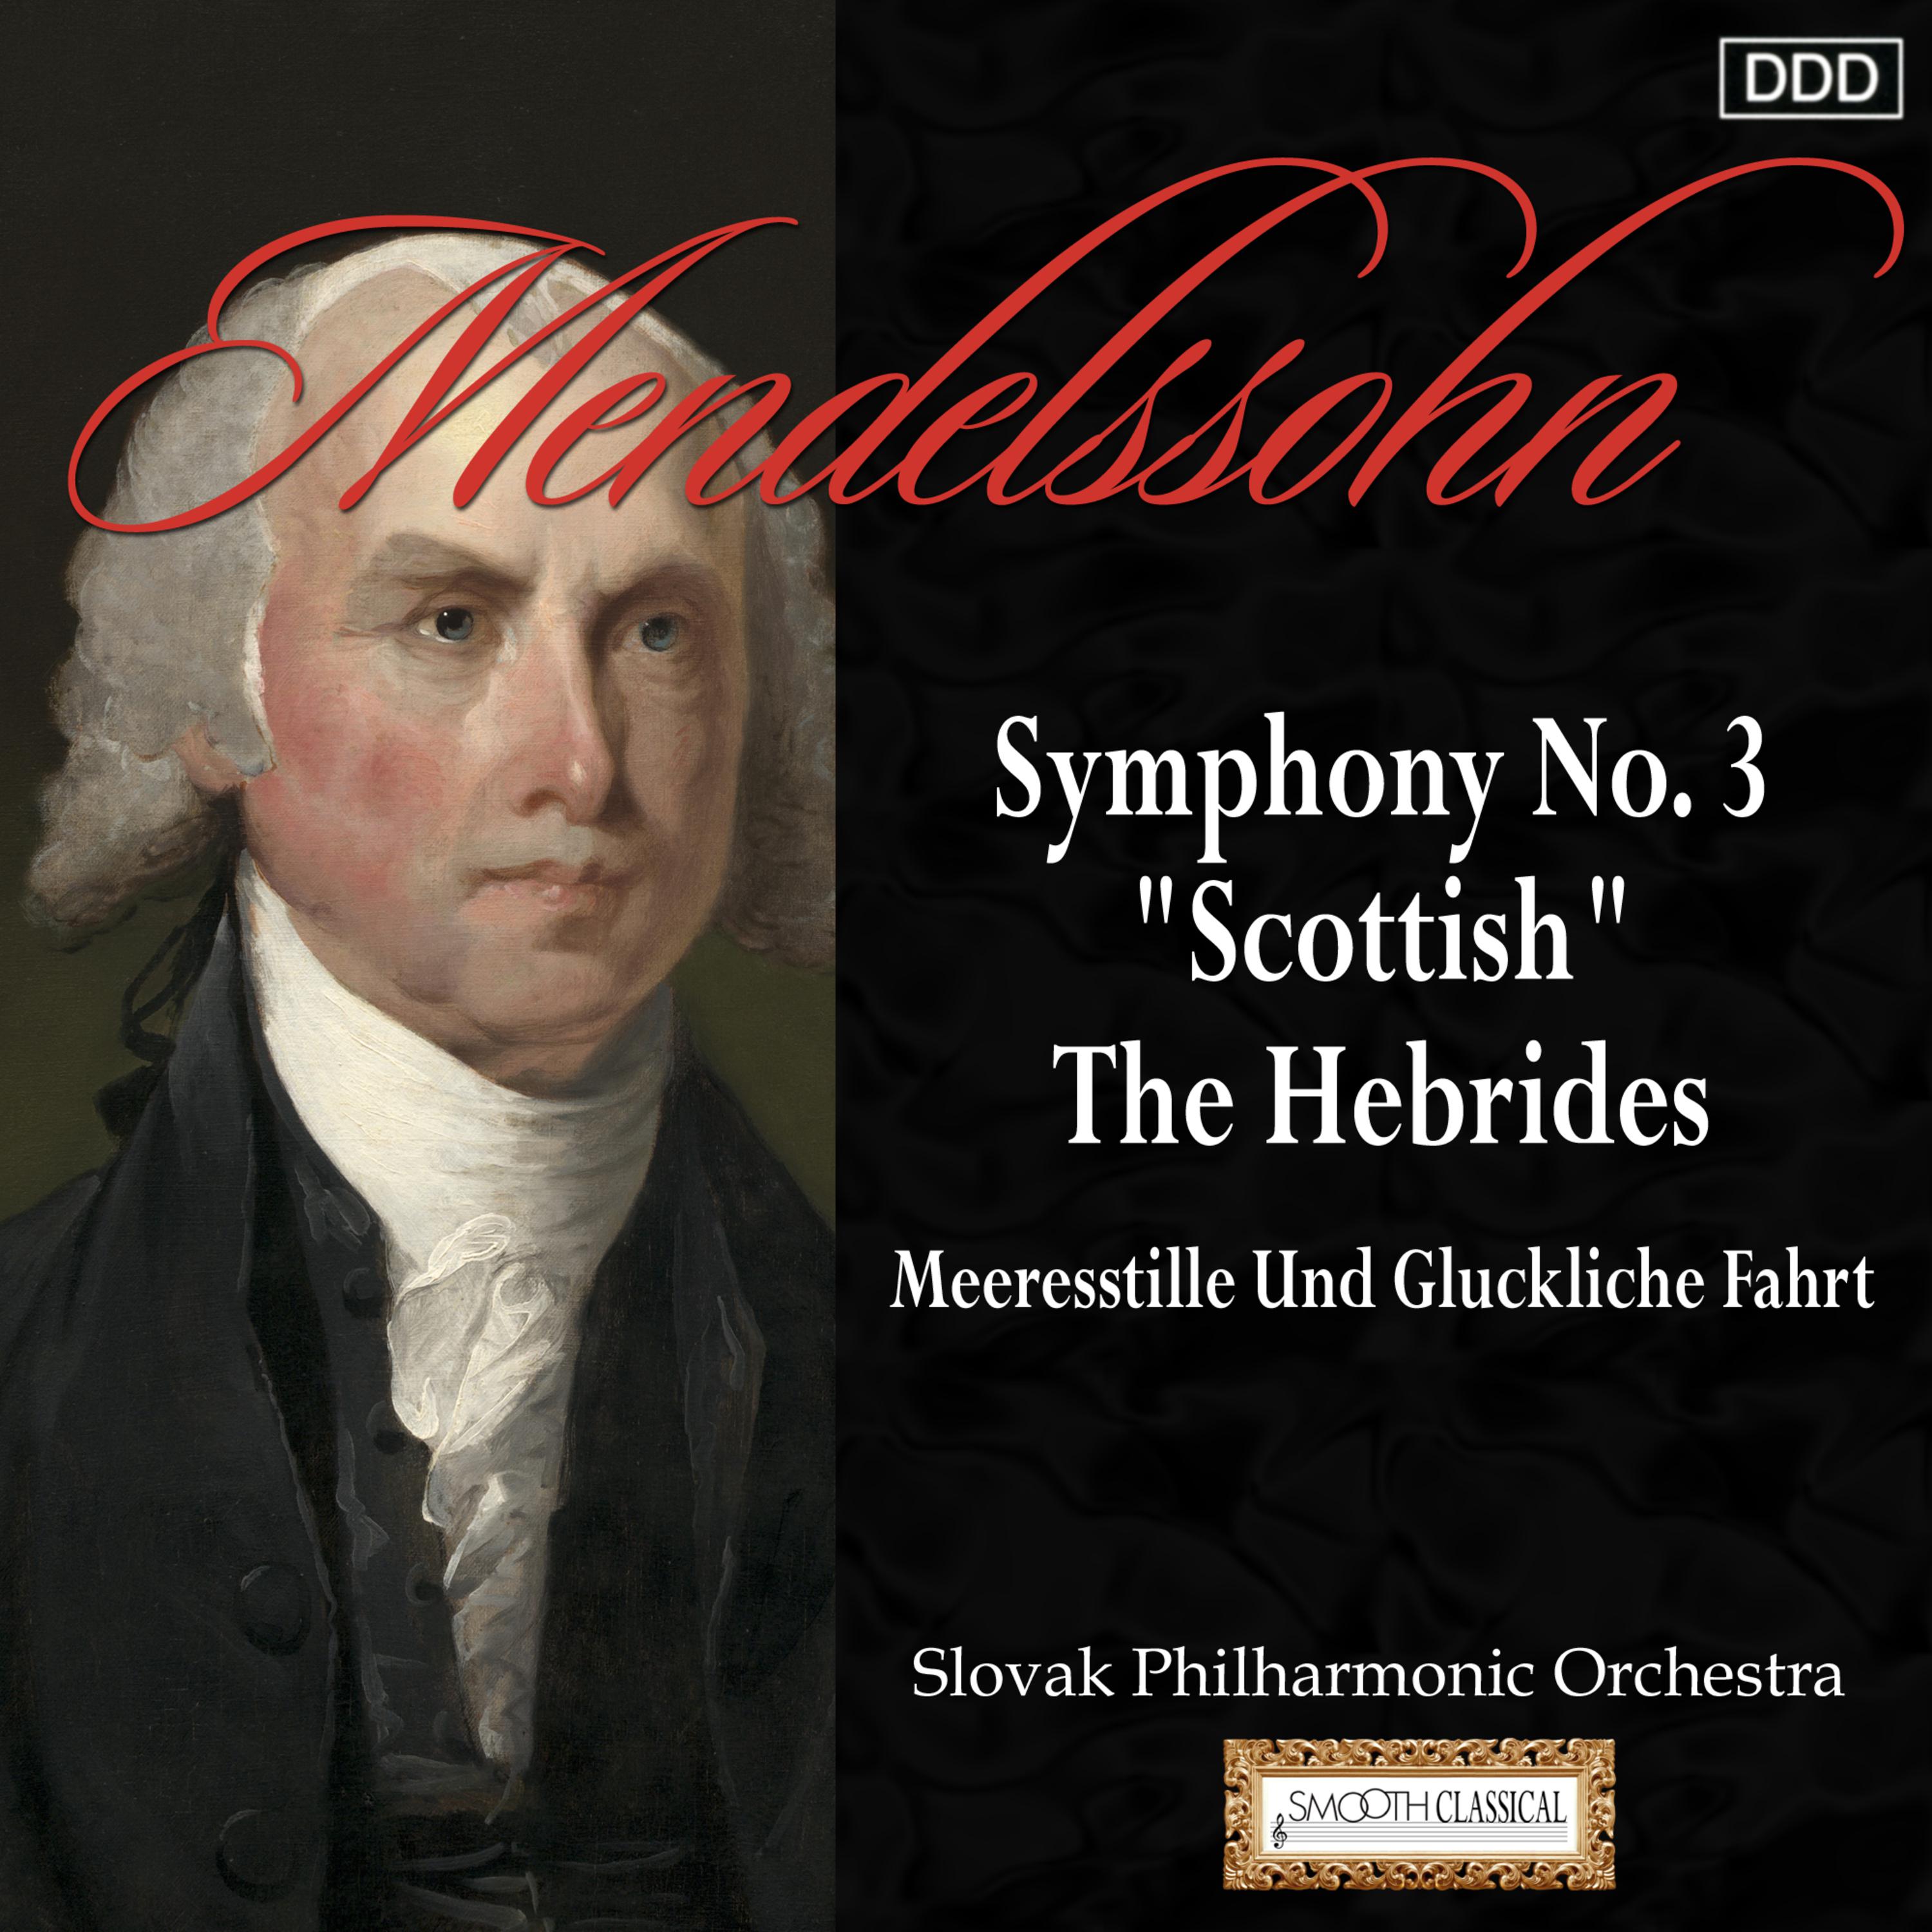 Mendelssohn: Symphony No. 3, "Scottish" - The Hebrides - Meeresstille Und Gluckliche Fahrt